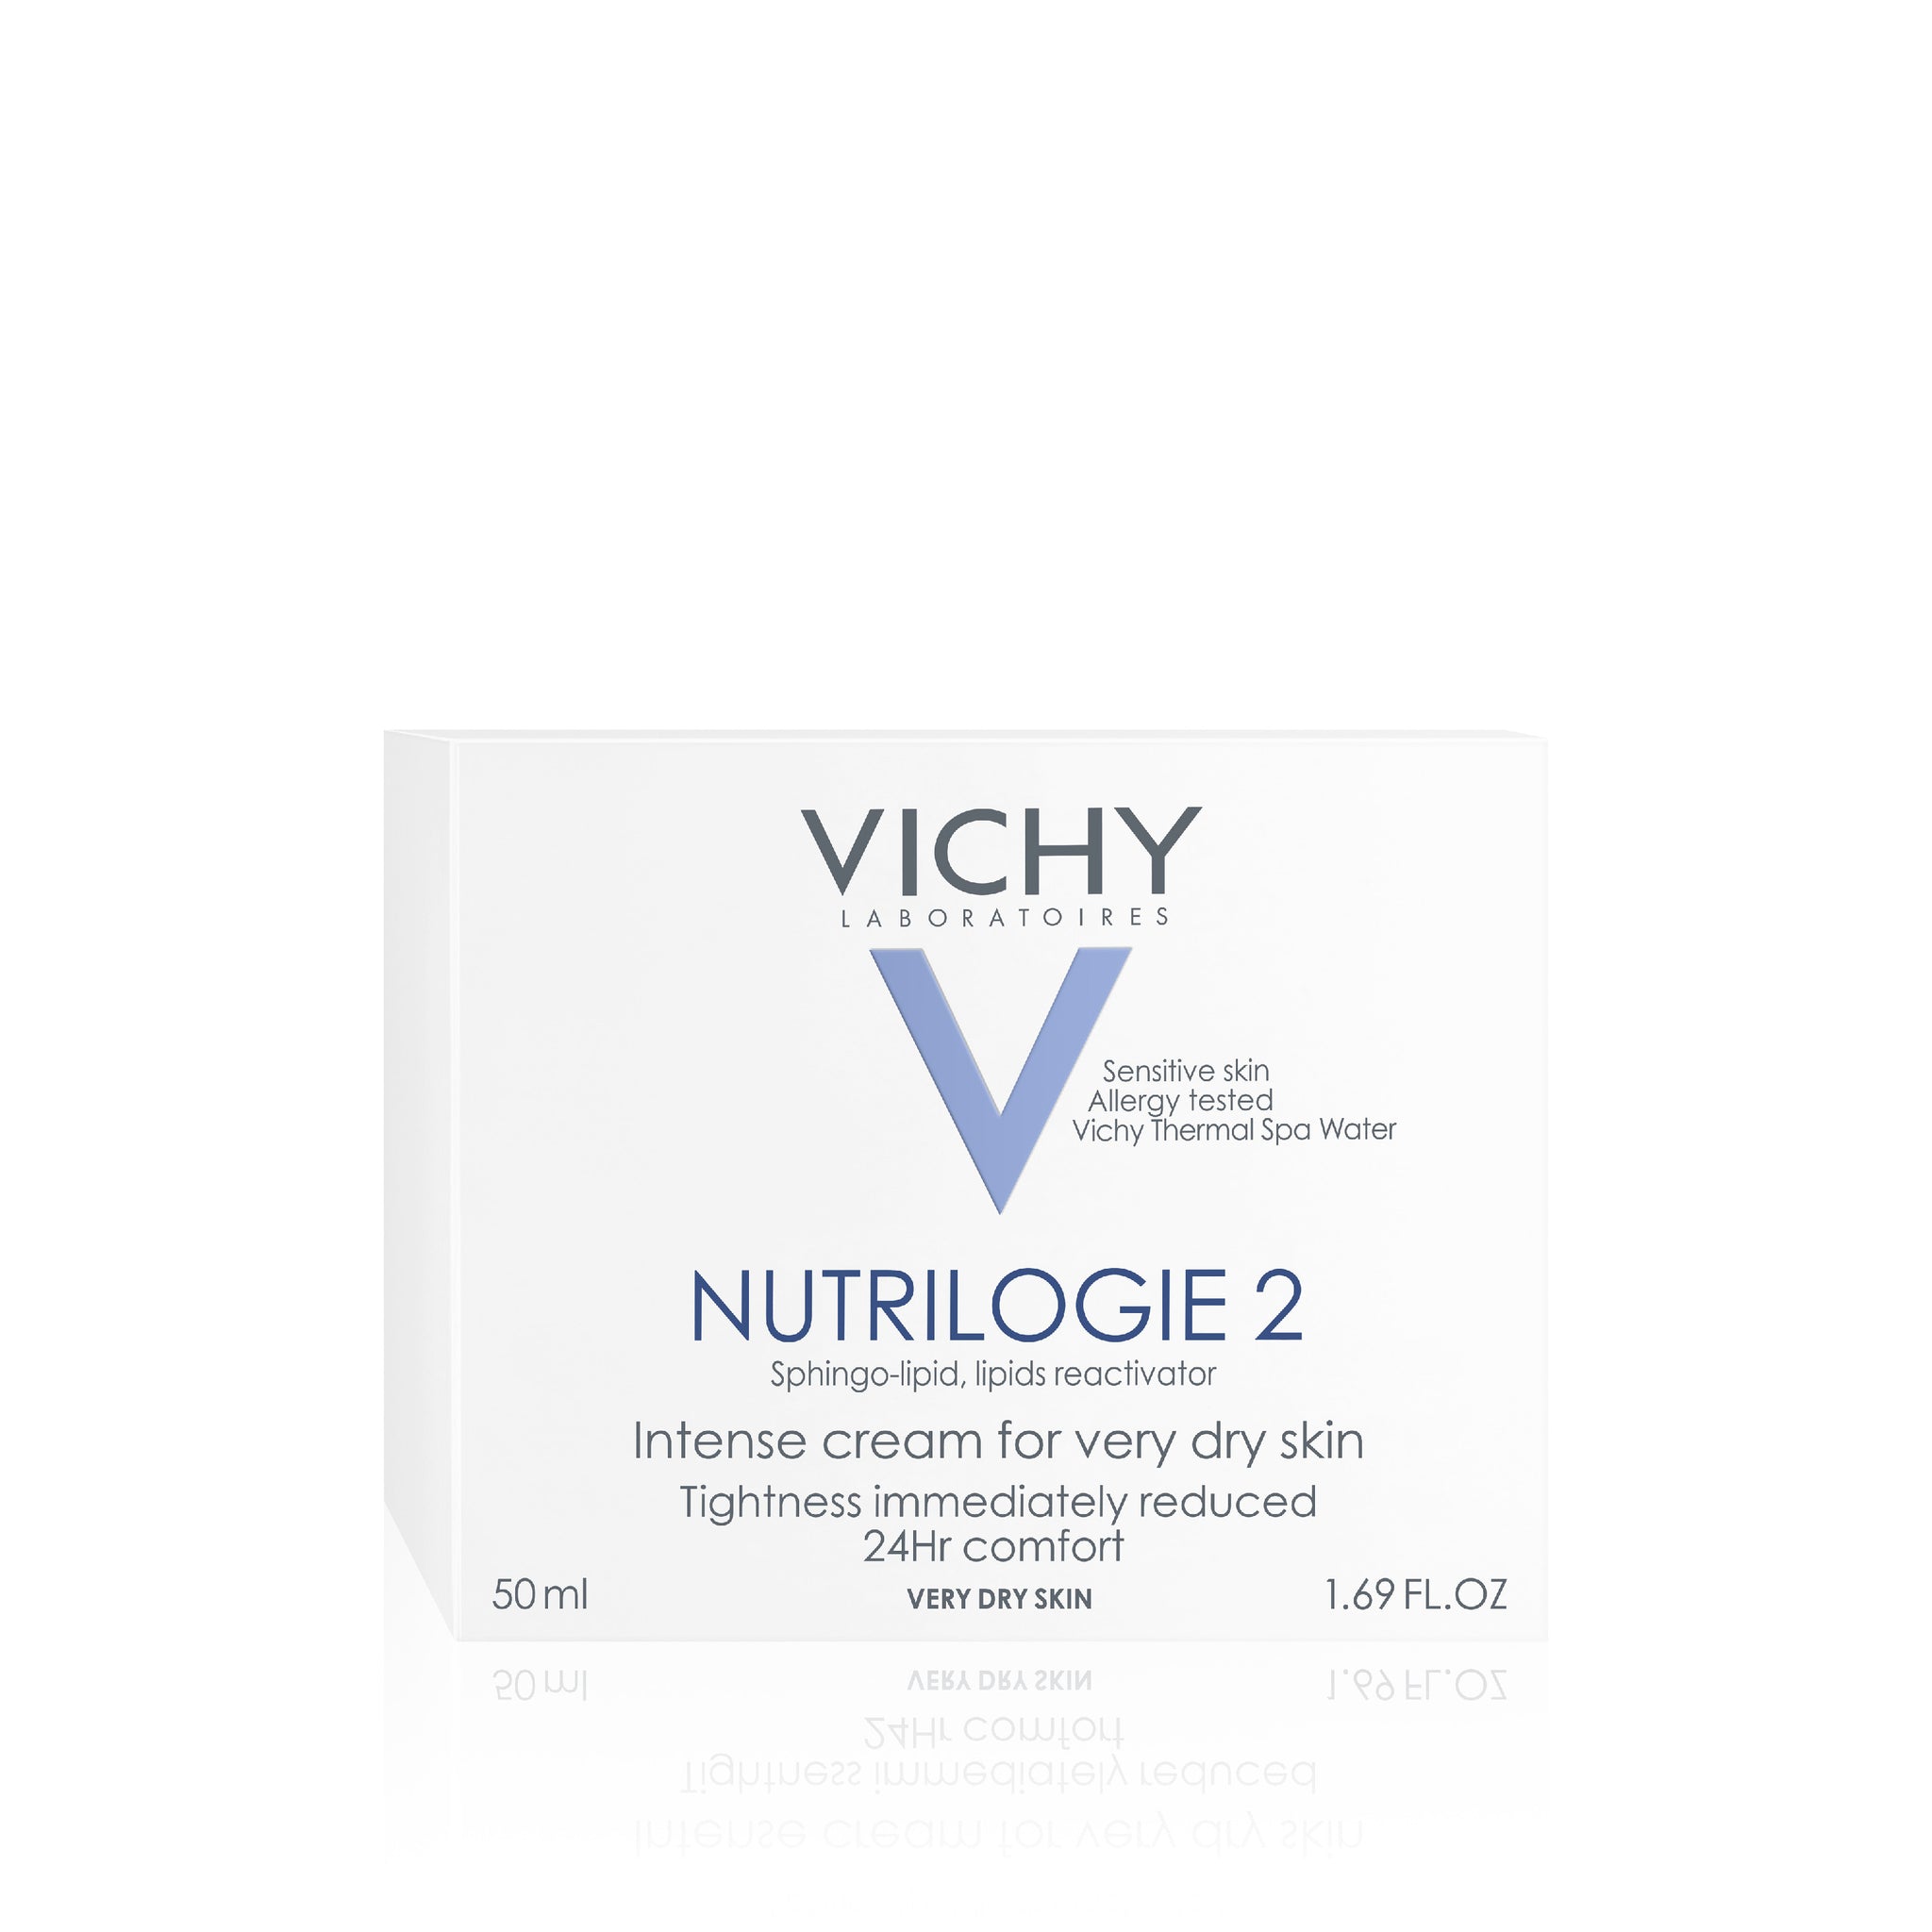 Vichy Nutrilogie 2 dagcrème 50ml, voor een zeer droge, gevoelige huid